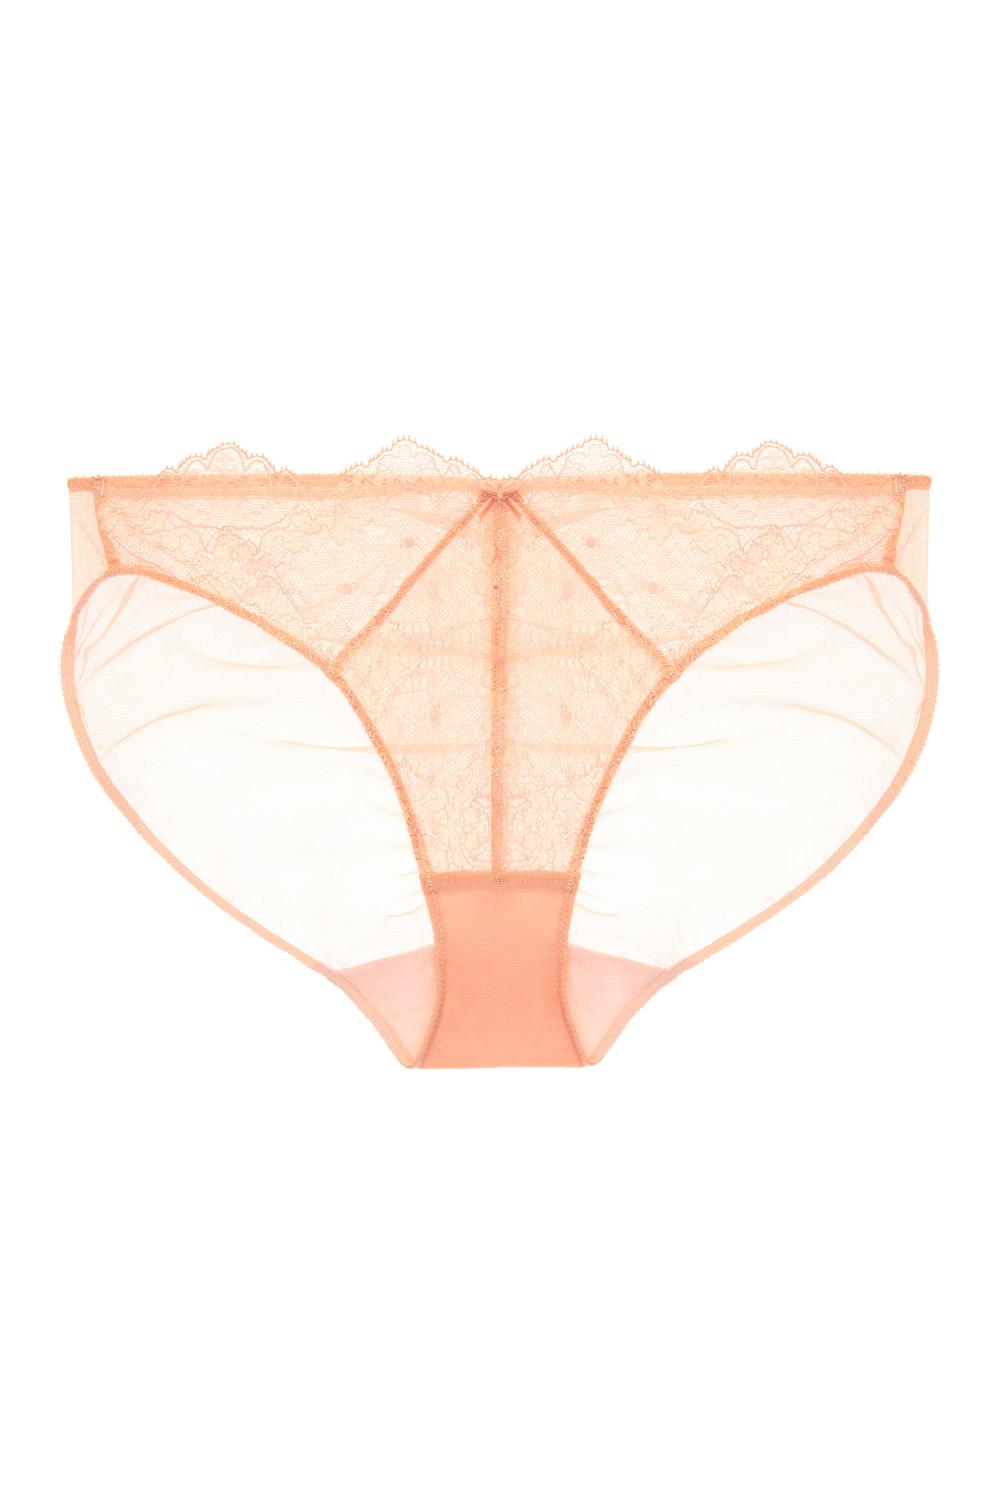 Lurex Lace Bikini Panty Vintage Peach-Dita Von Teese-Rebel Romance